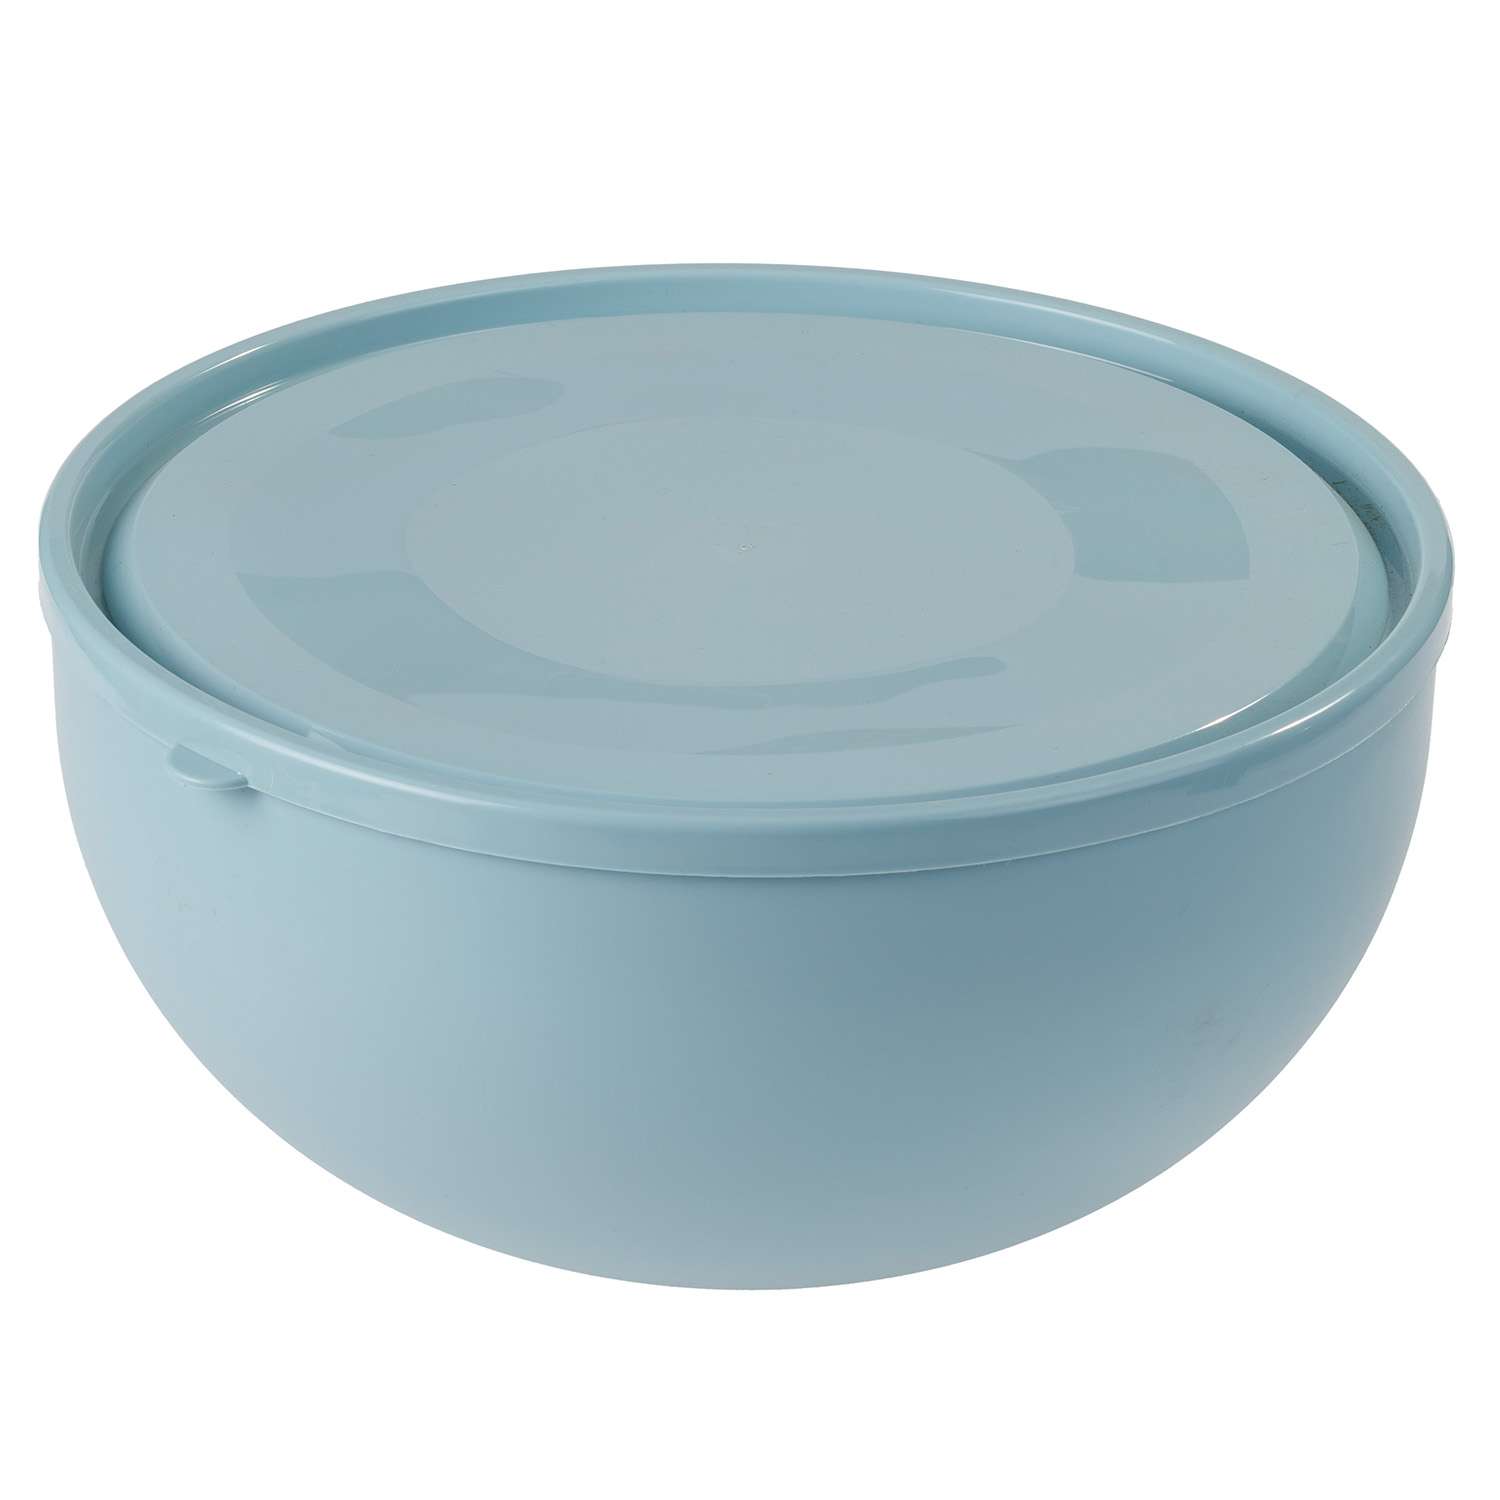 Салатник elfplast с крышкой пластиковый серо-голубой 4 л диаметр 25.5 высота 12.6 - фото 4